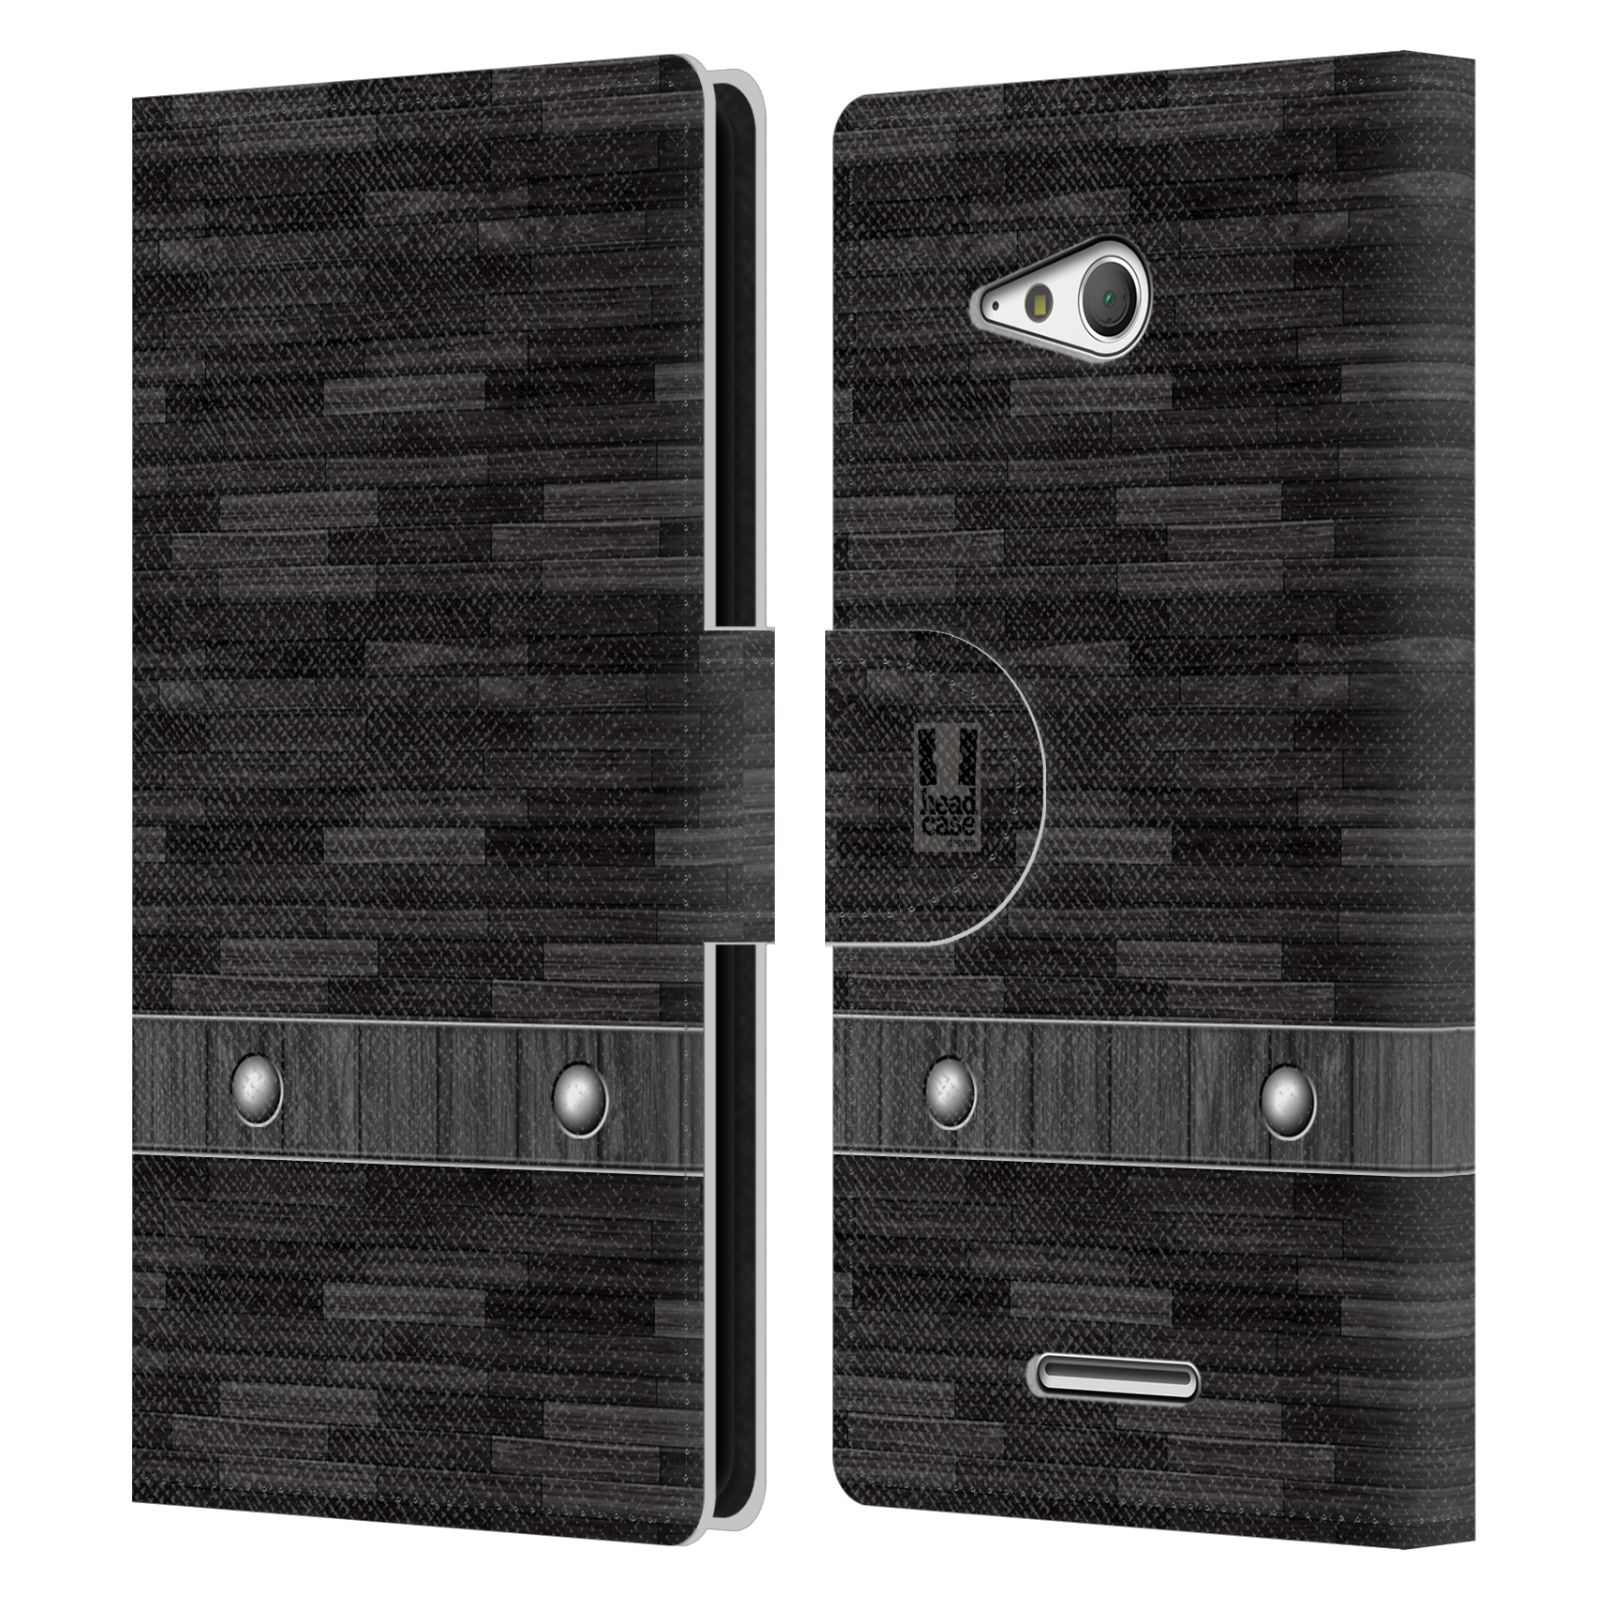 HEAD CASE Flipové pouzdro pro mobil SONY XPERIA E4g stavební textury dřevo černá barva